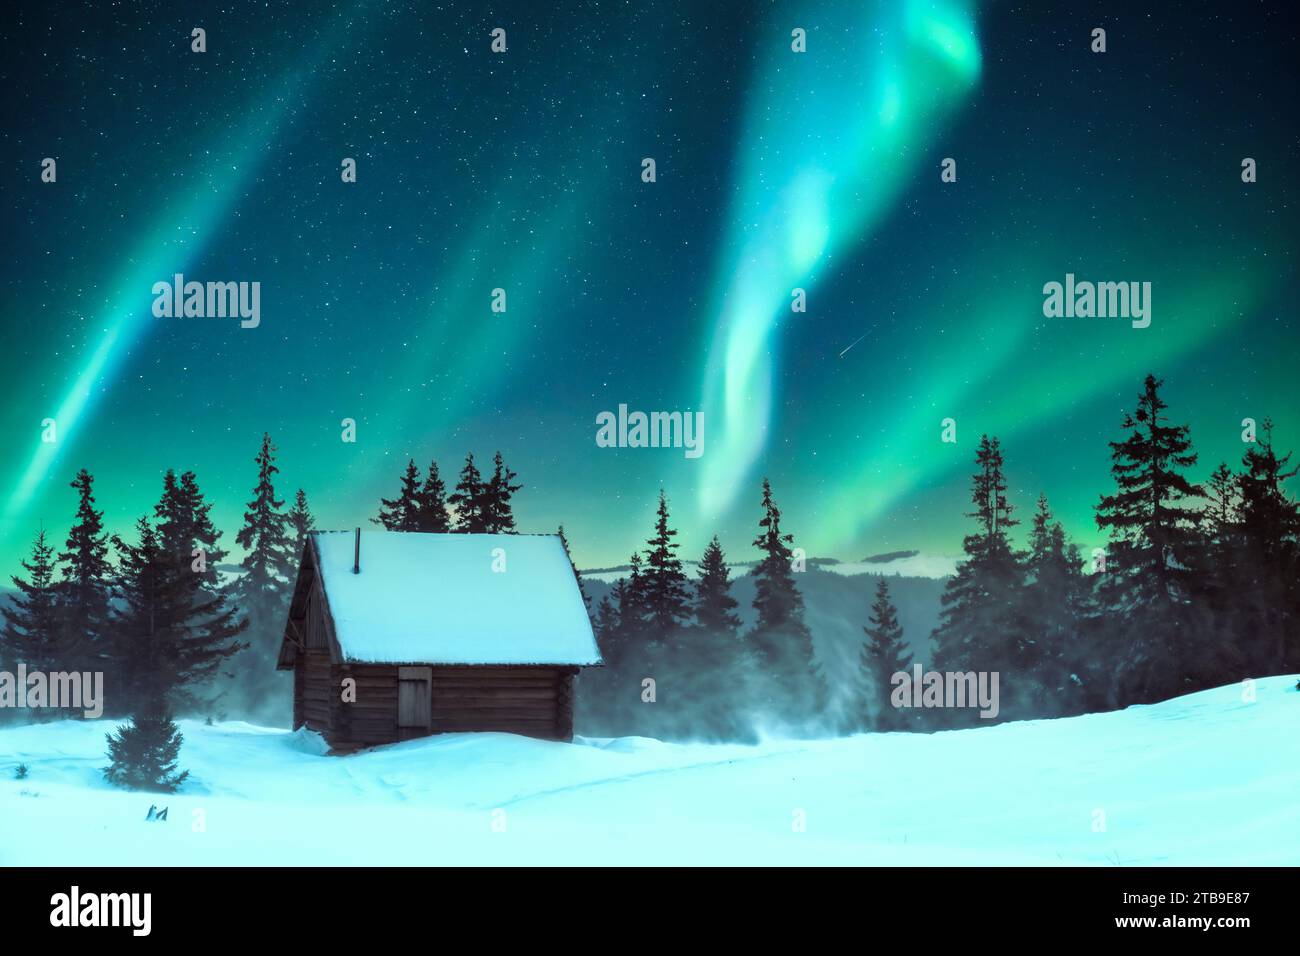 Pini innevati e una capanna di legno su un prato di montagna in una scena invernale. Aurora boreale. Aurora boreale nella foresta invernale. Concetto di vacanze natalizie e vacanze invernali Foto Stock